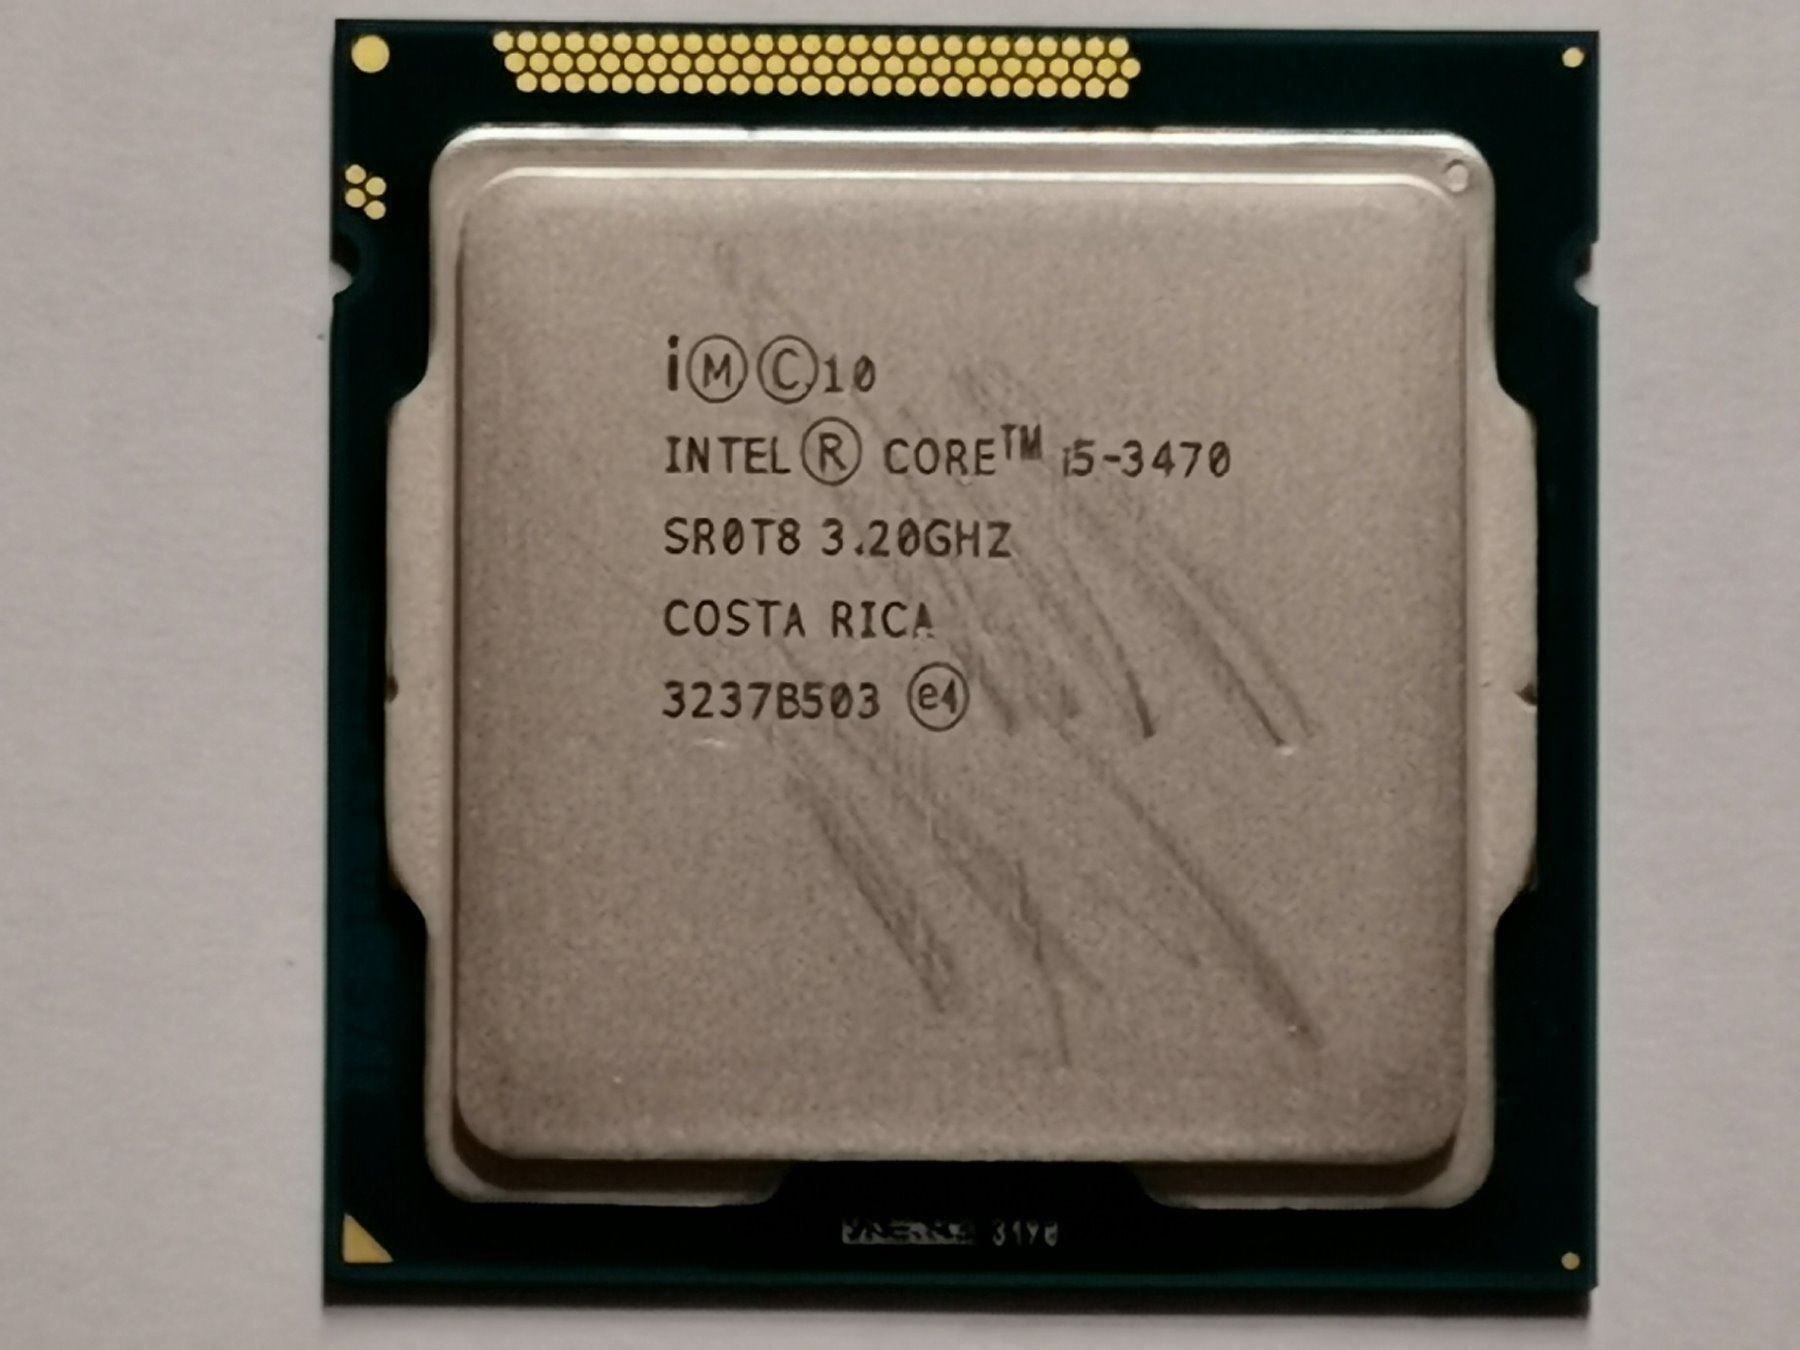 I5 3470 сравнение. Intel Core i5 3470. Intel(r) Core(TM) i5-3470 CPU @ 3.20GHZ 3.20 GHZ. I5 3470 характеристики. I5 3470 s spec.